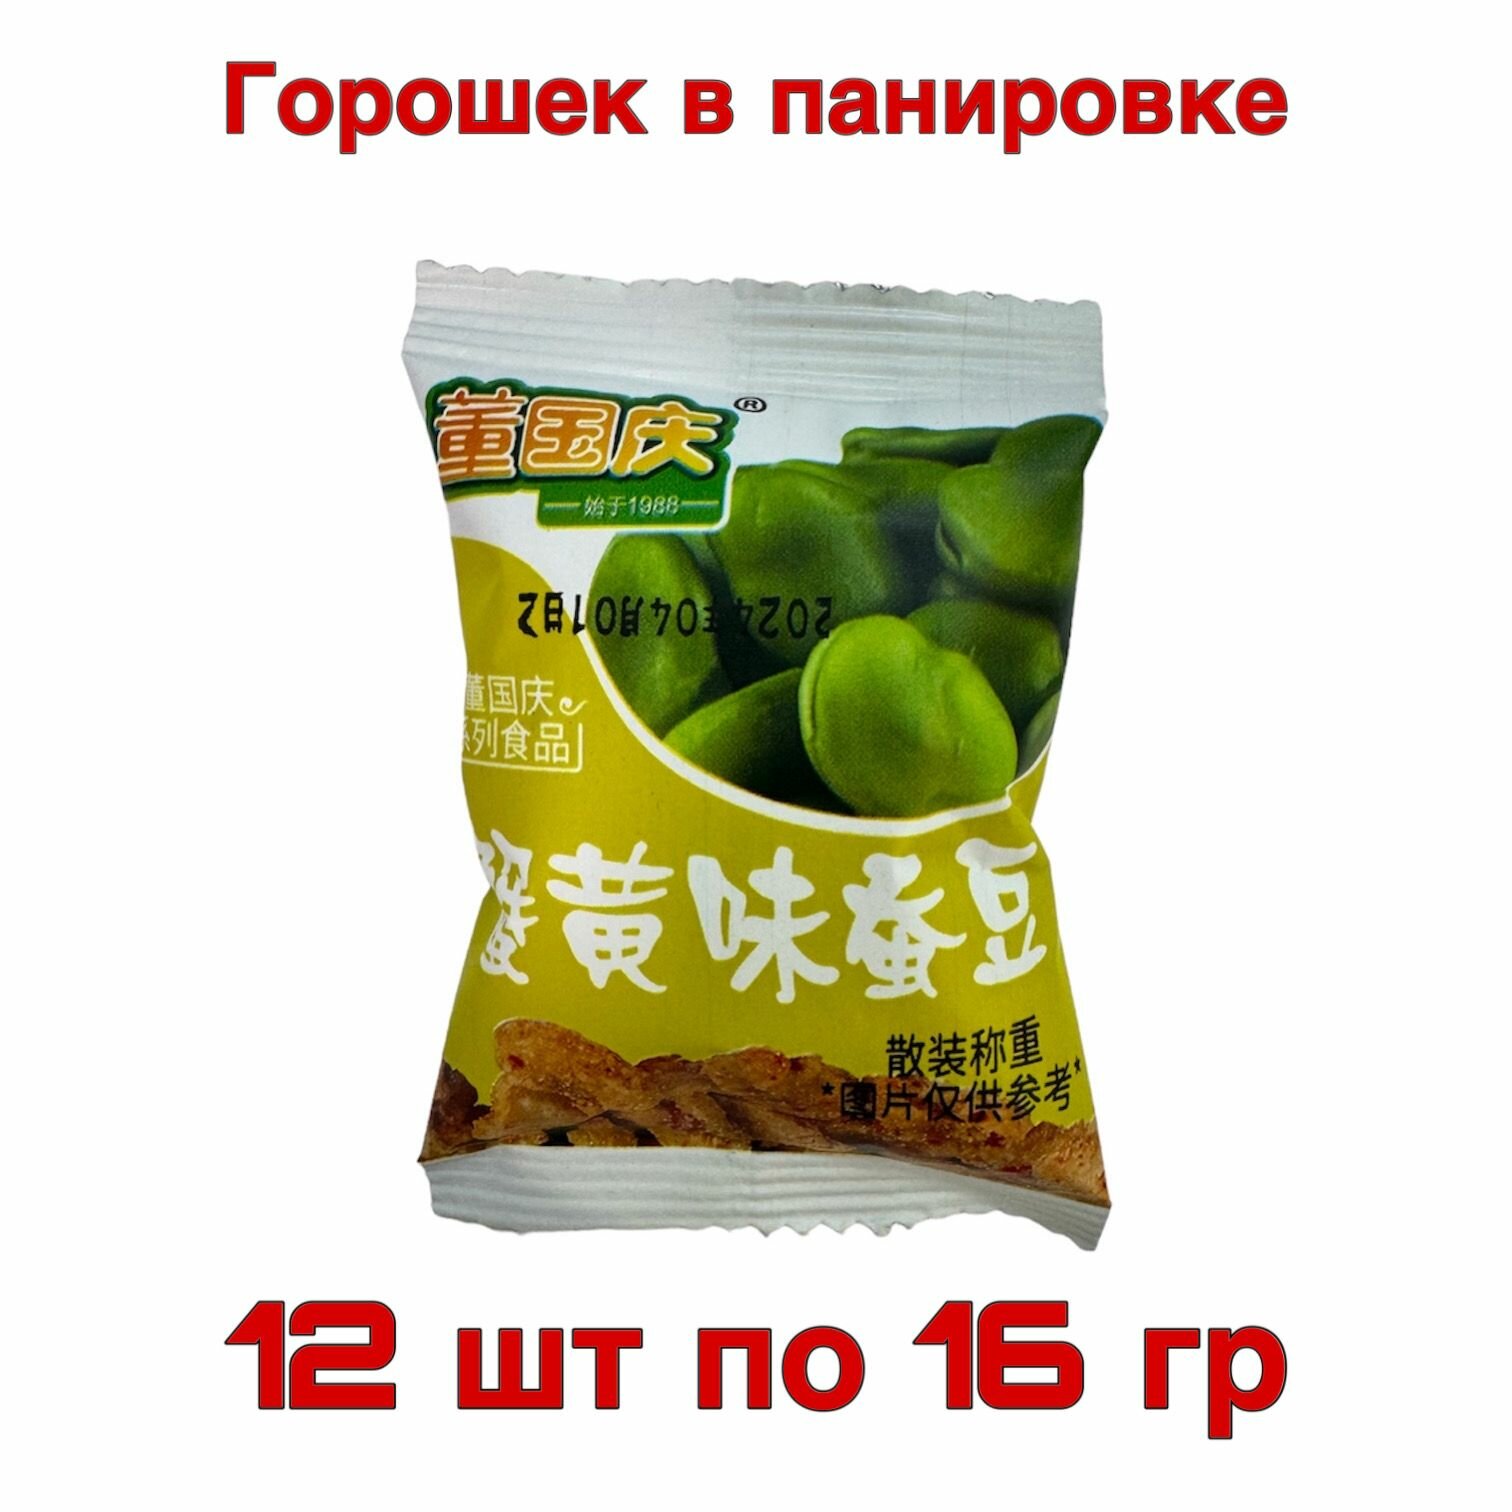 Жареный зеленый горошек В панировке упаковка 12 шт по 16 гр